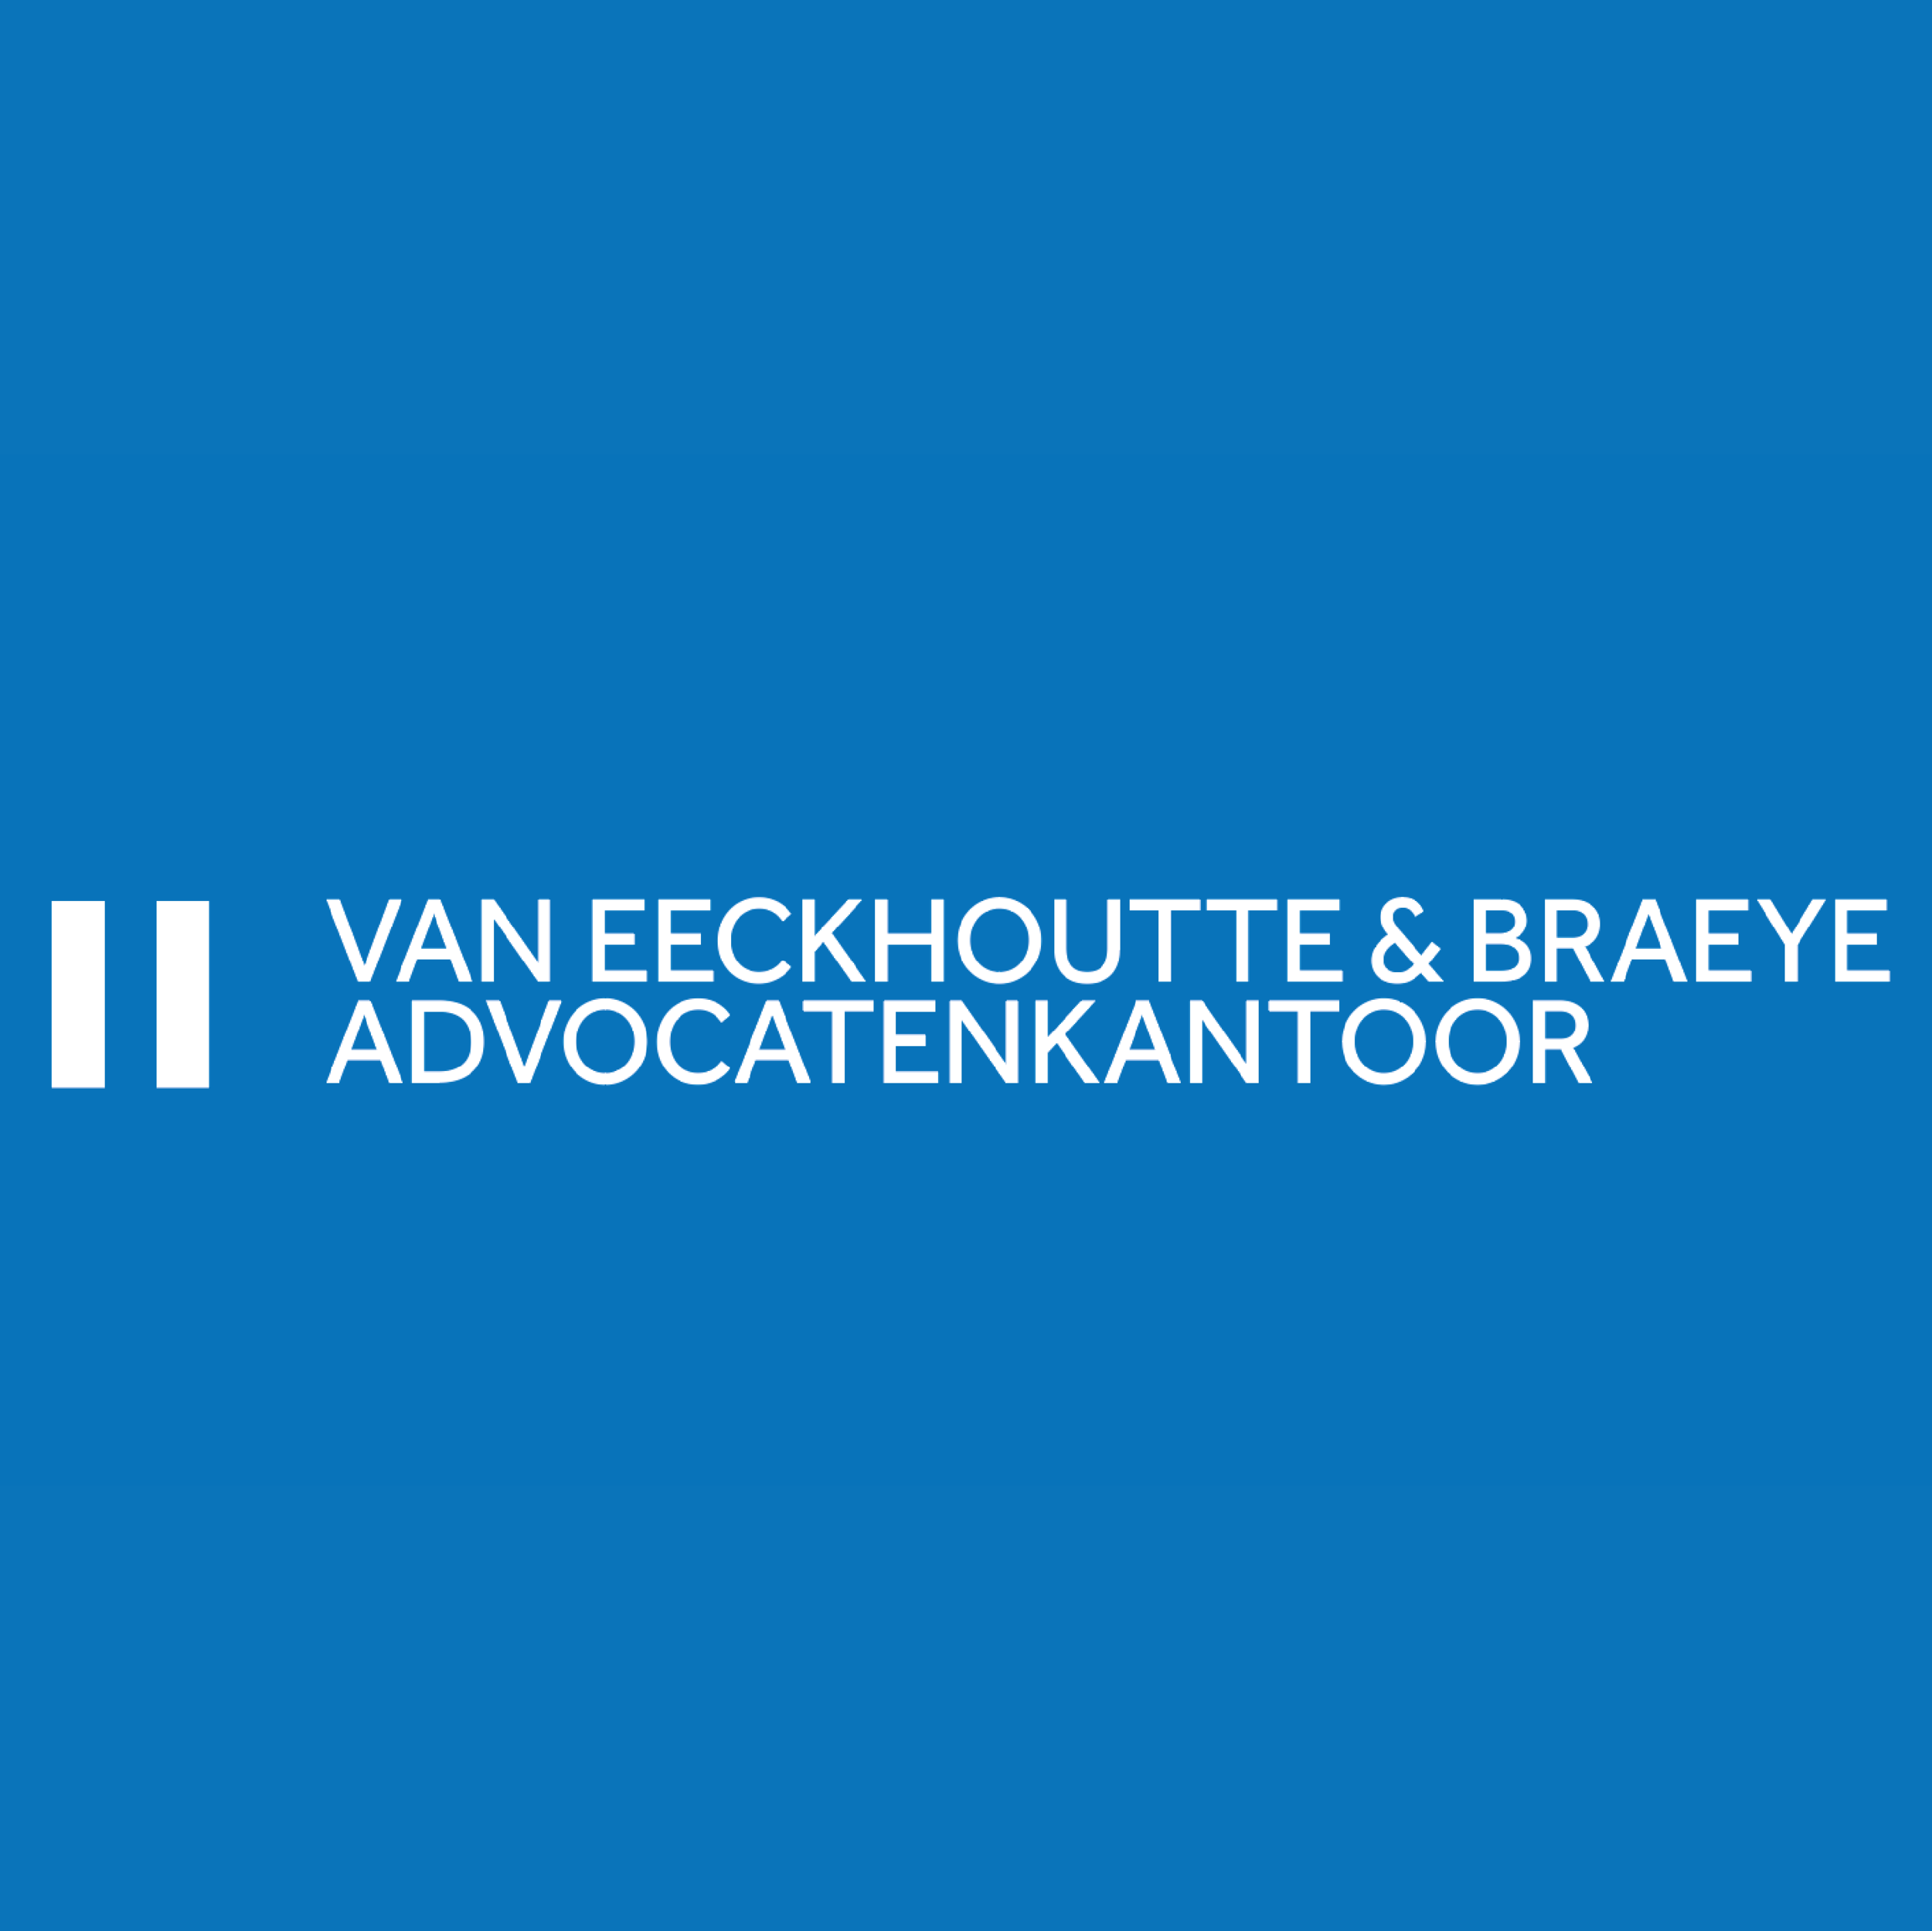 10 Van Eeckhoutte  & Braeye advocatenkantoor.png